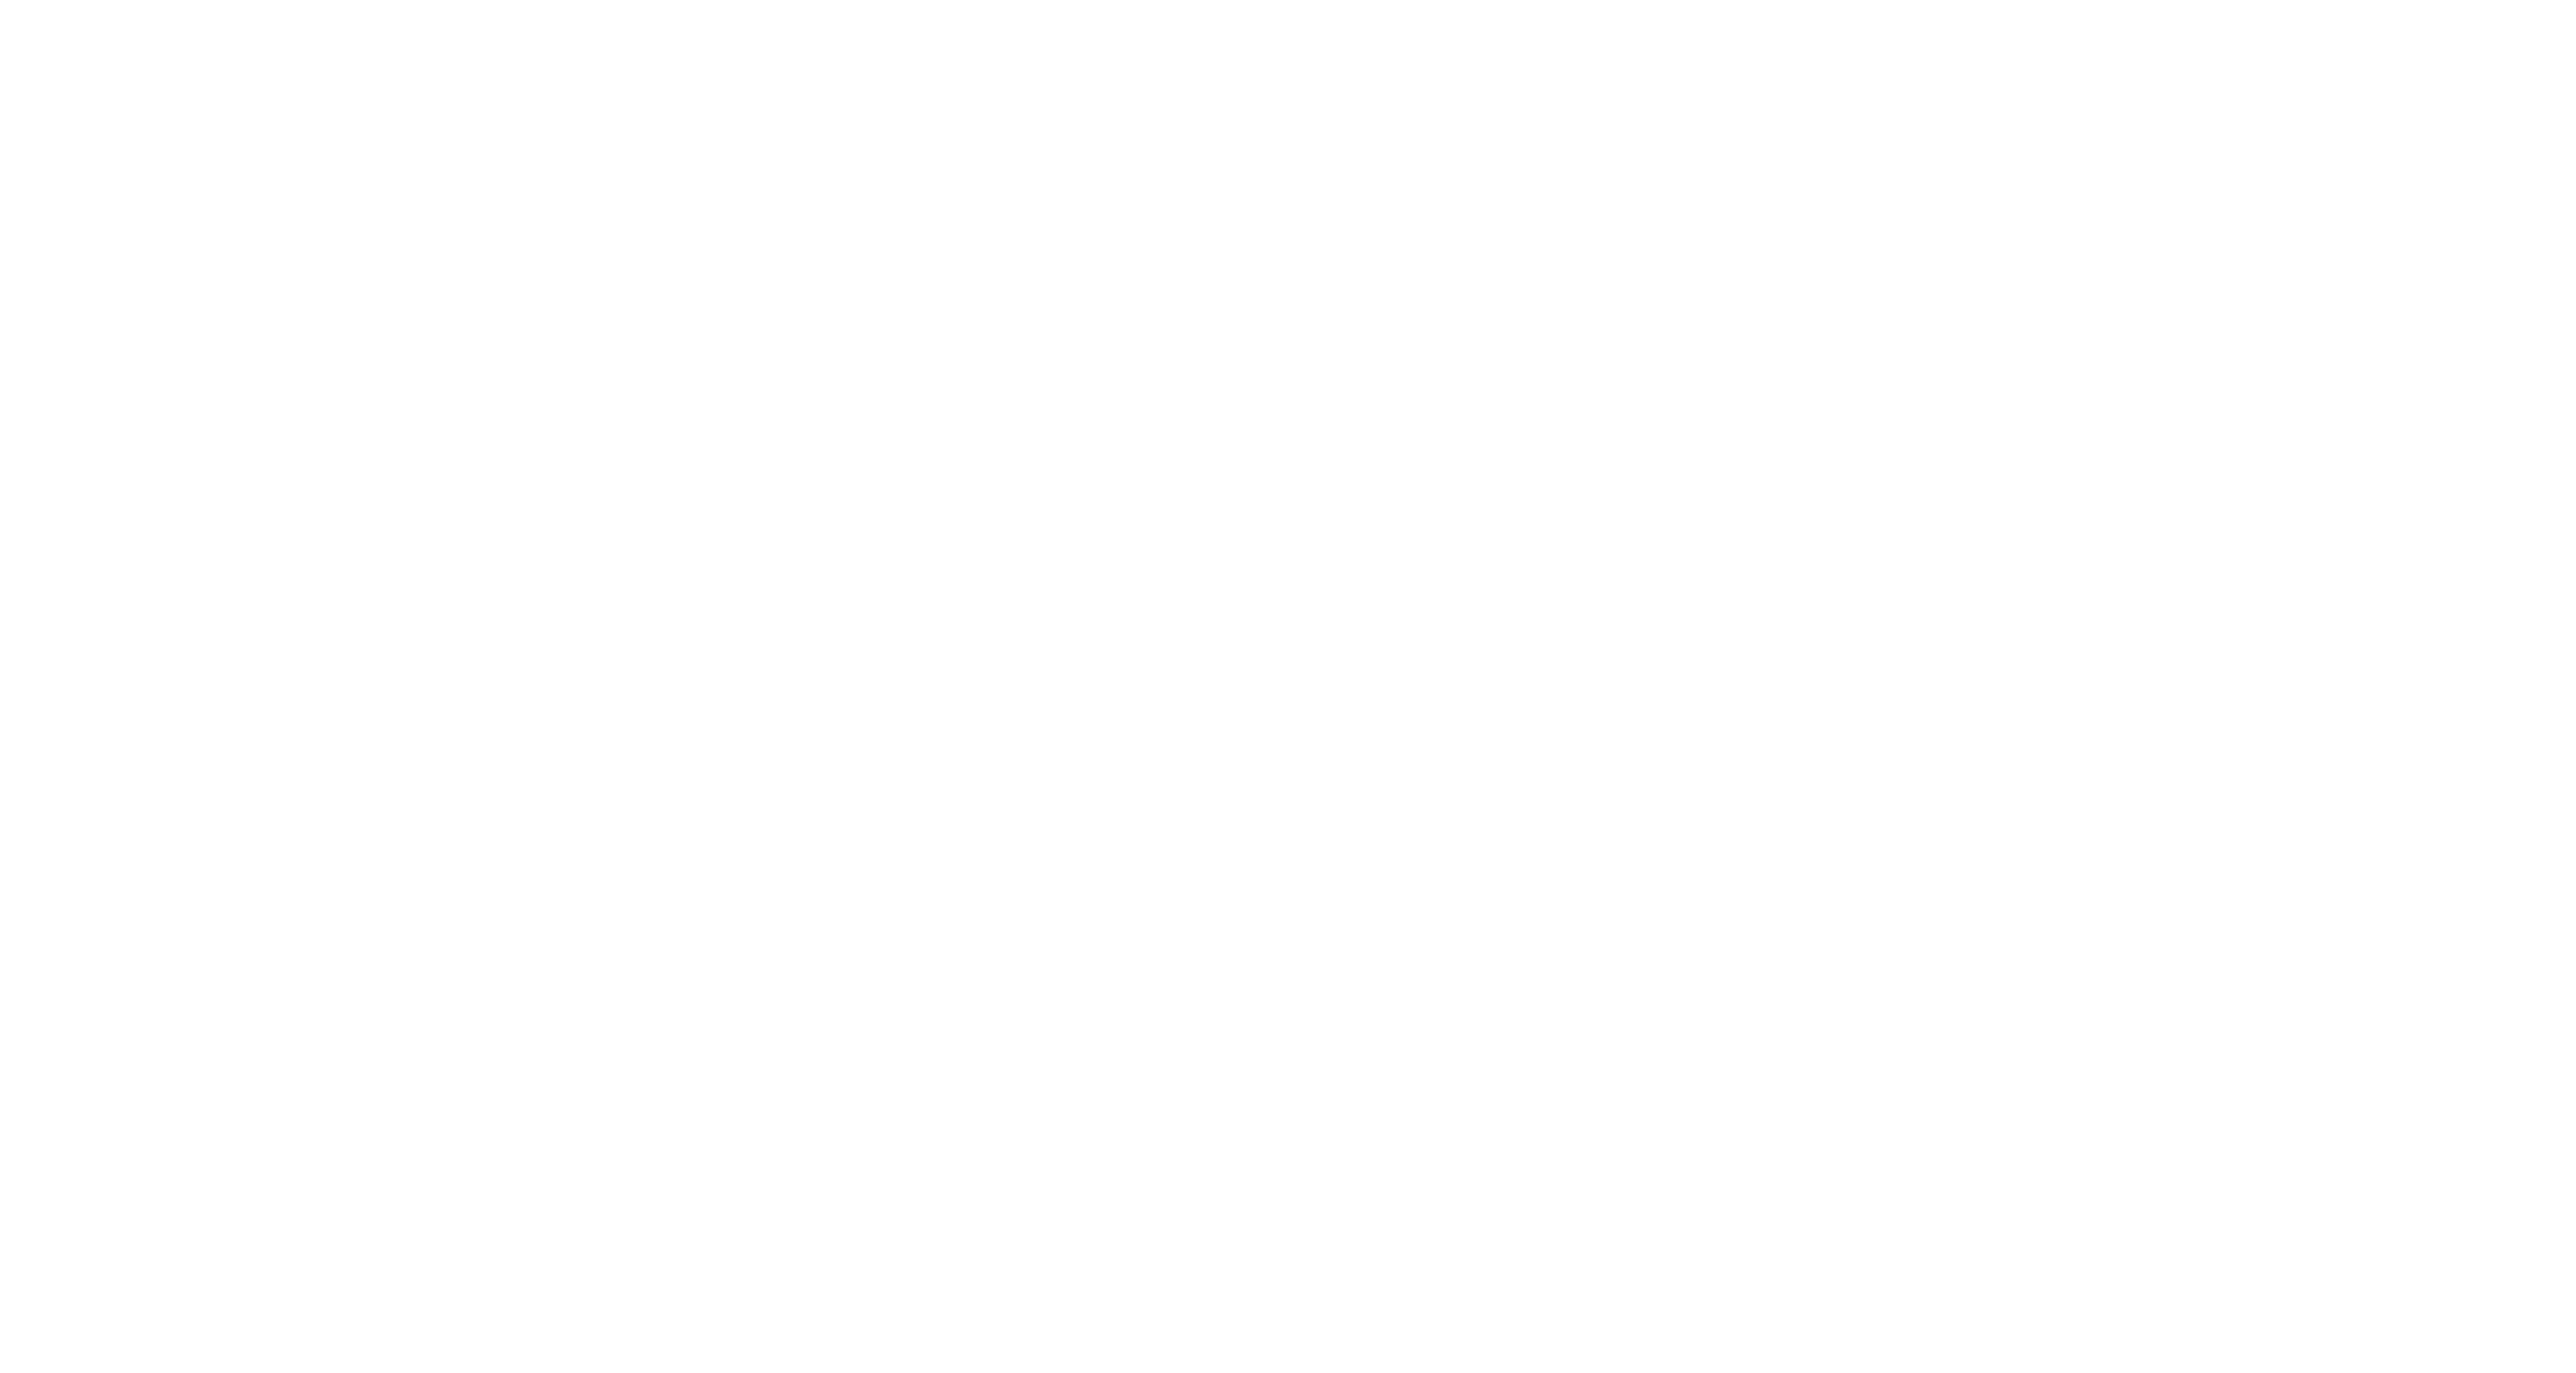 Rocket League - tournaments for money